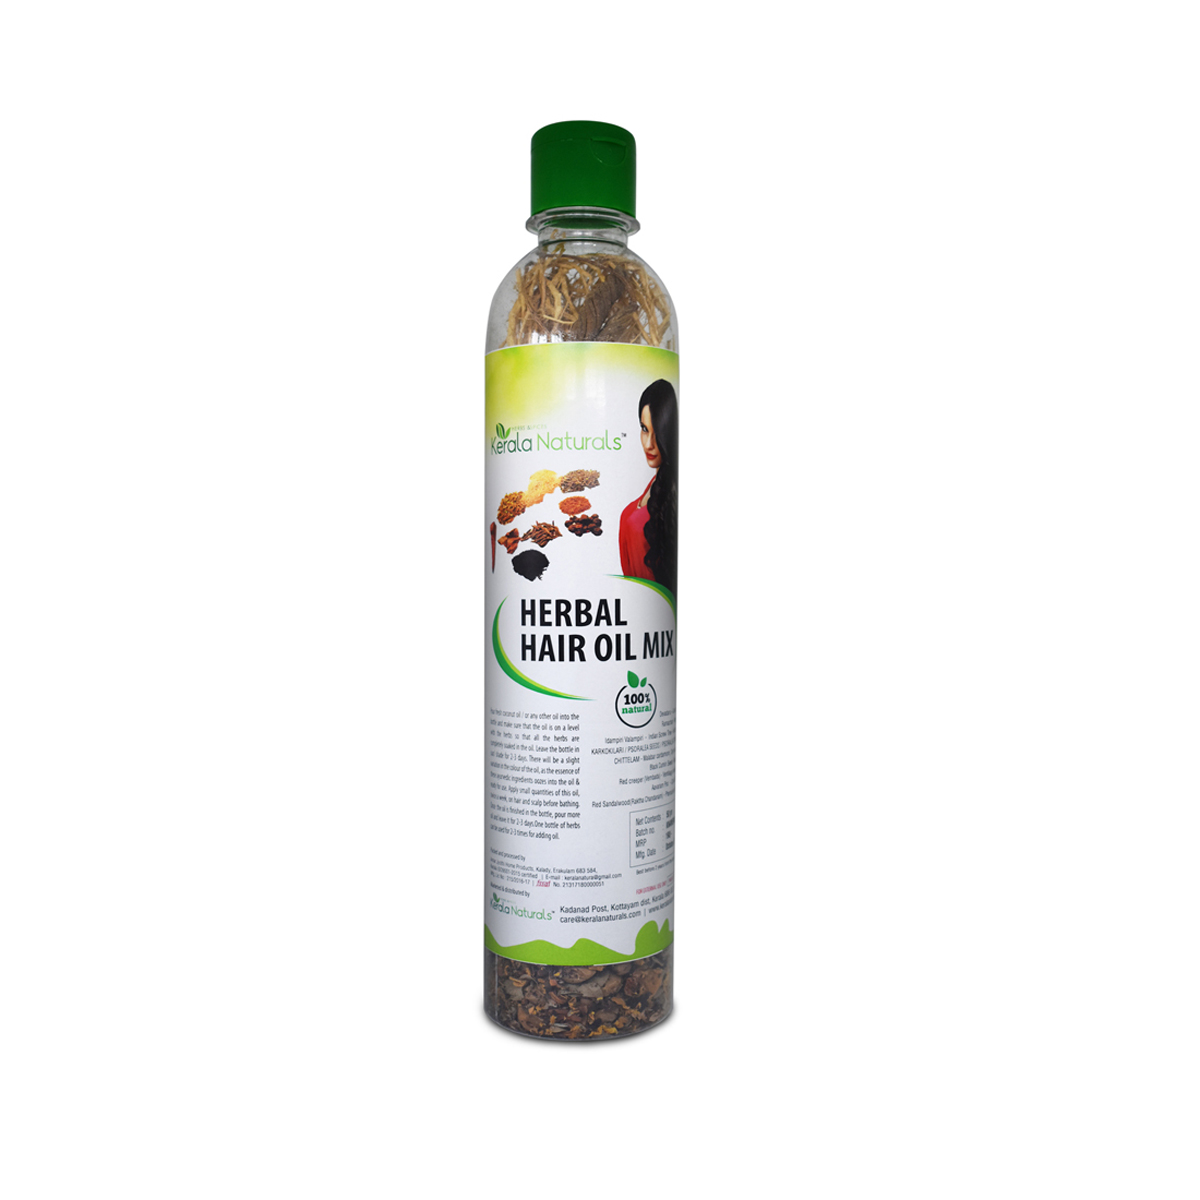 herbal hair oil mix - Kerala Naturals